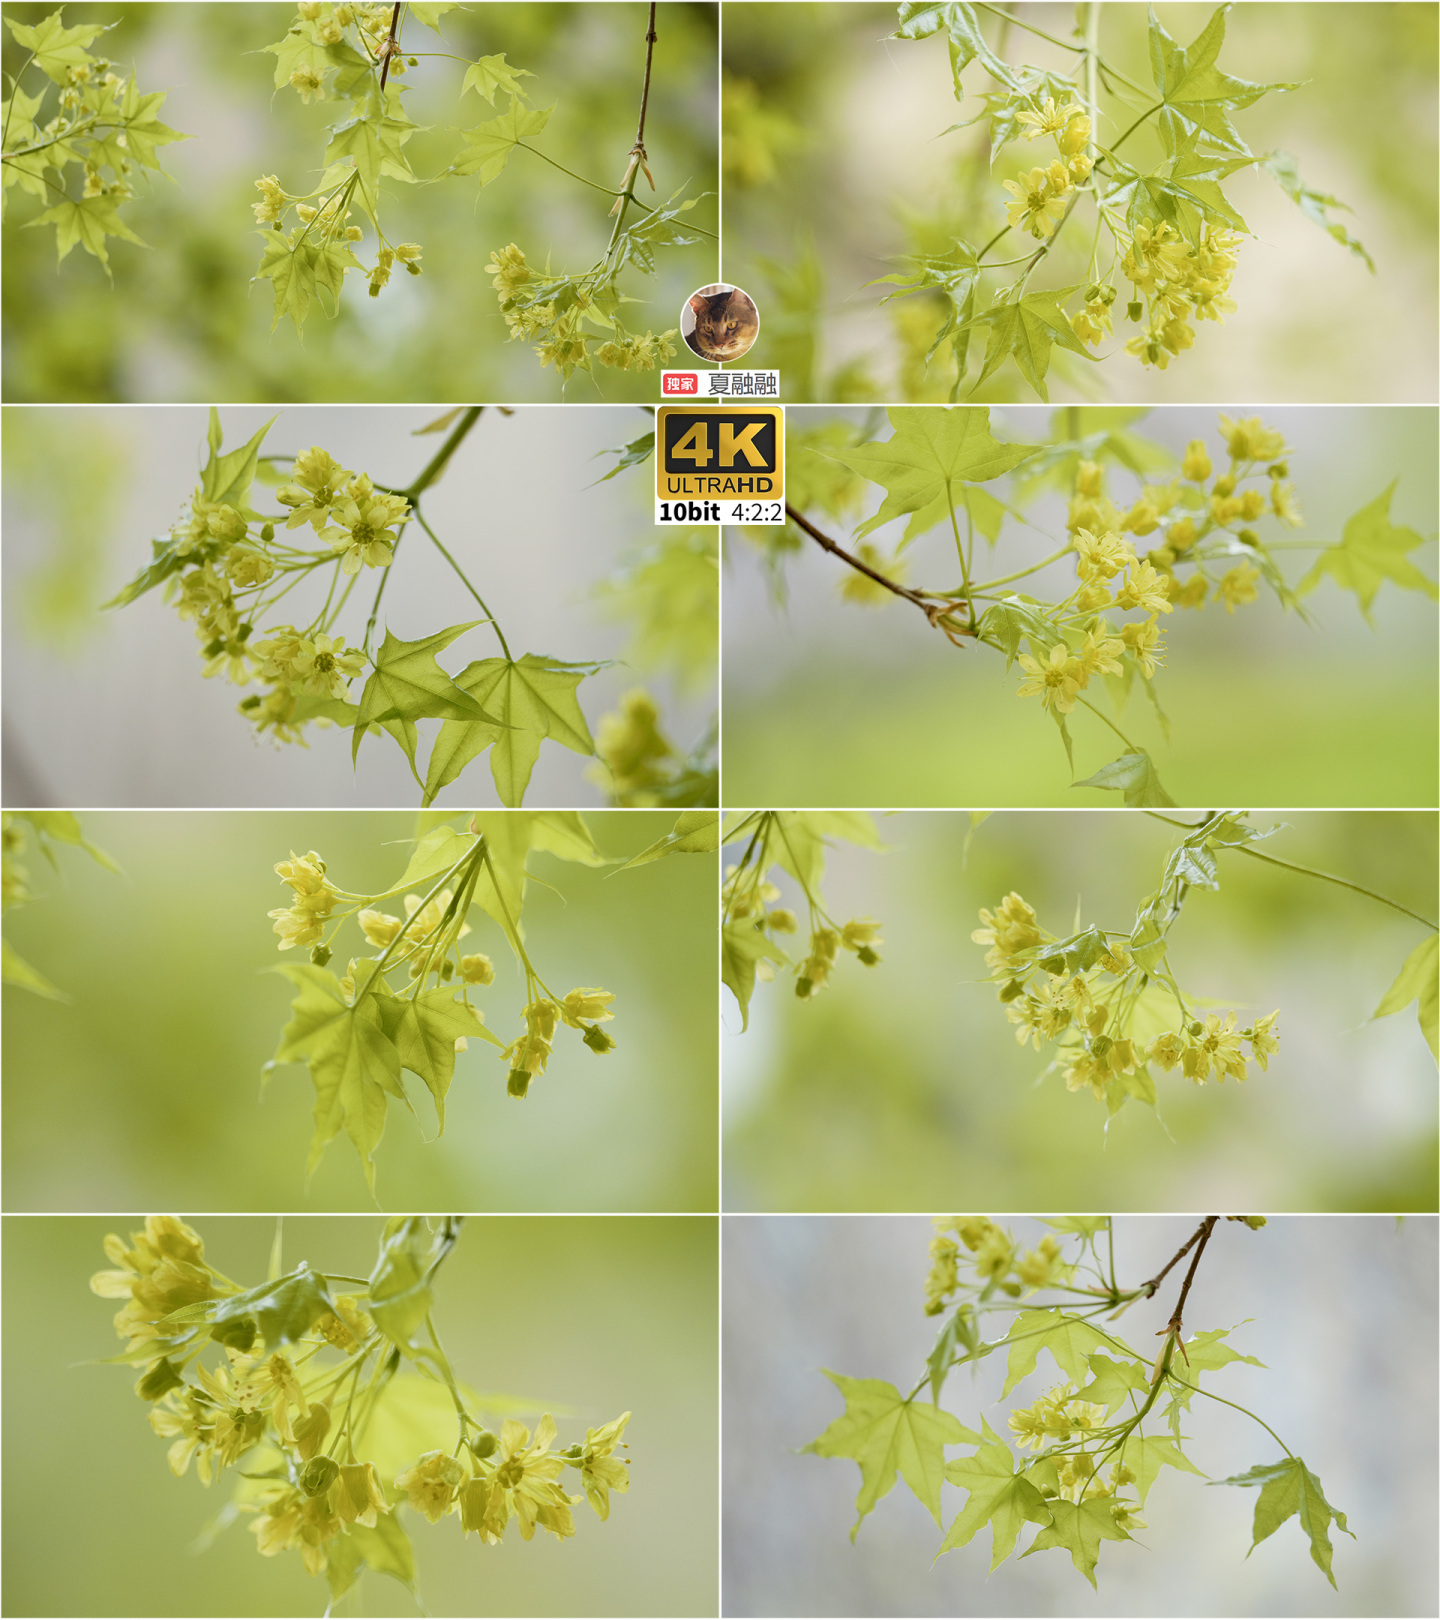 清新养眼的春天-枫树的嫩绿叶子和黄色的花